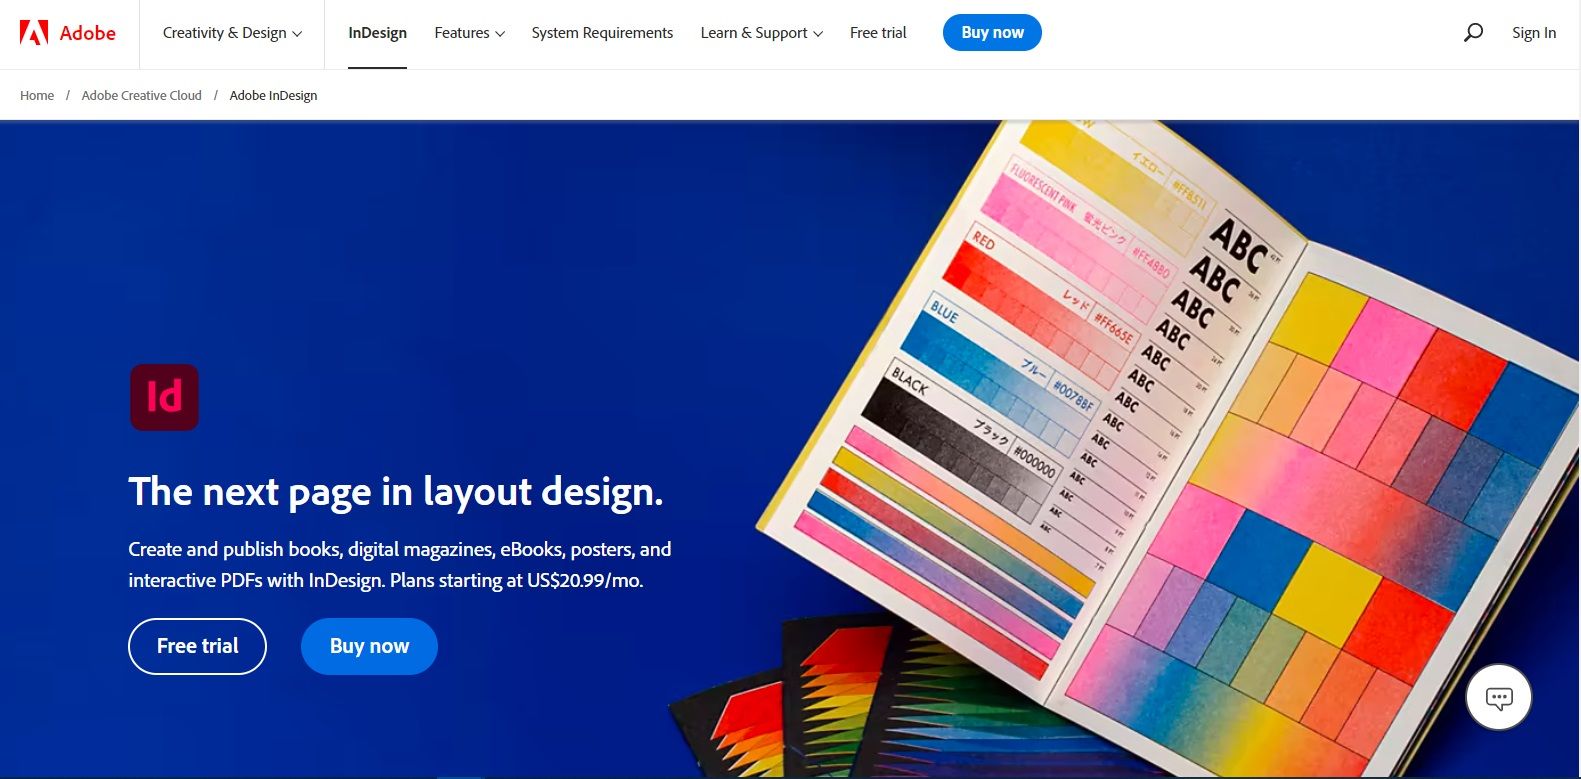 Adobe InDesign homepage screenshot